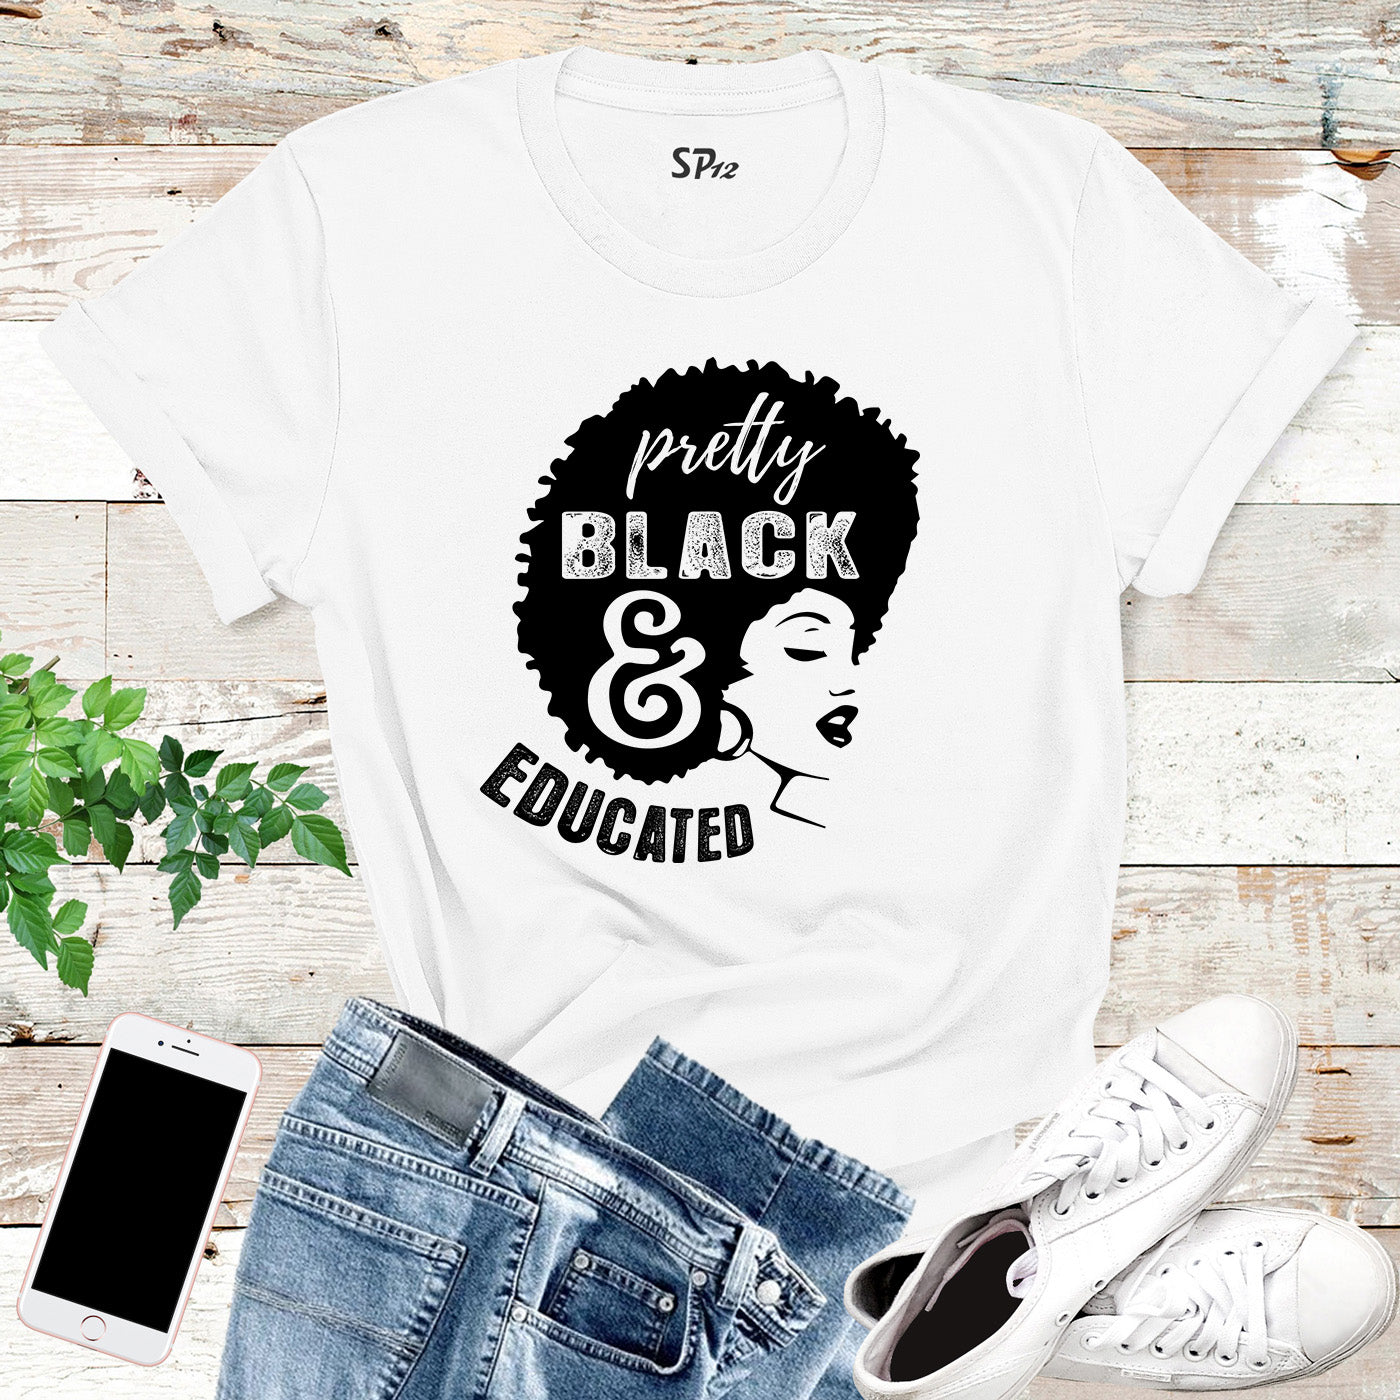 Black Girl Power T Shirt